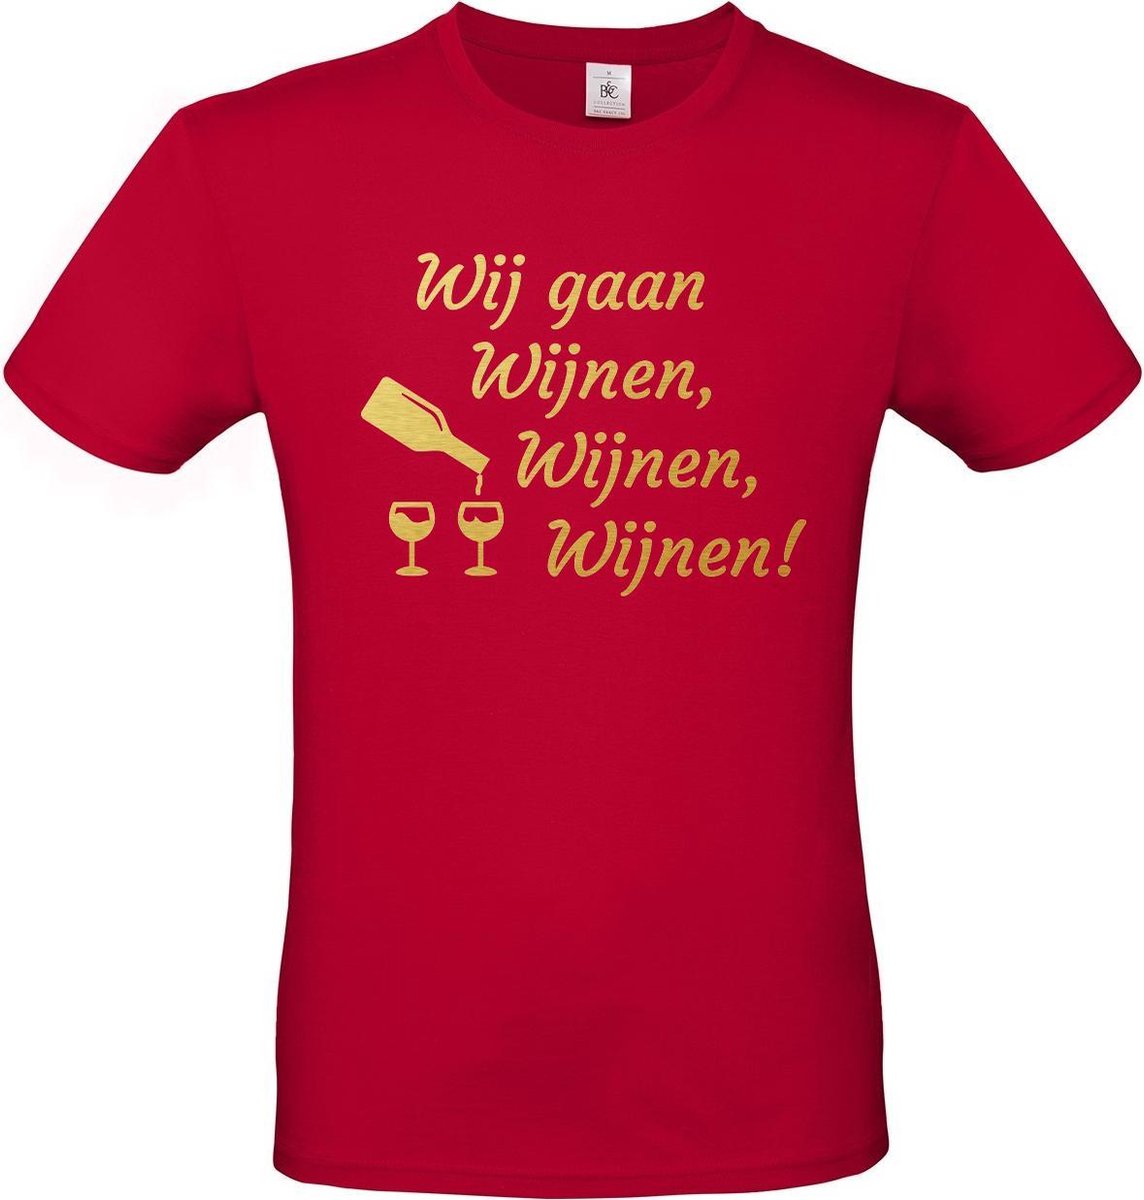 T-shirt met opdruk “Wij gaan Wijnen, wijnen, wijnen!” | Meiland collectie | Rood T-shirt met Goudkleurige opdruk. | Herojodeals